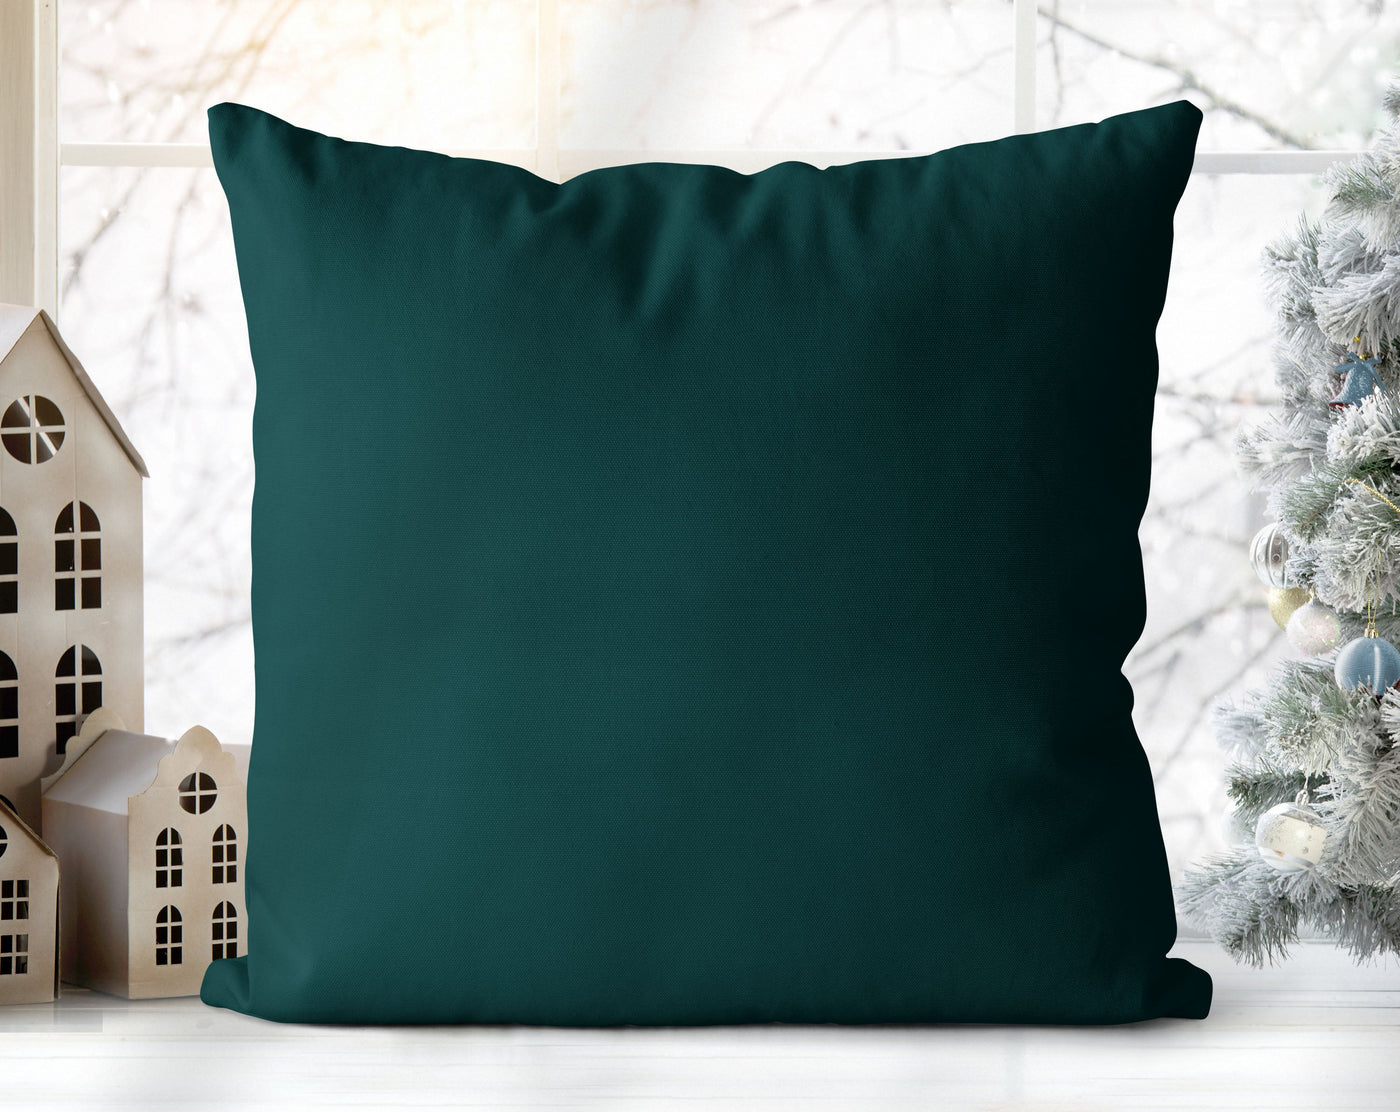 Seriously Silly Christmas Nutcracker Green Pillow Throw - Cush Potato Pillows